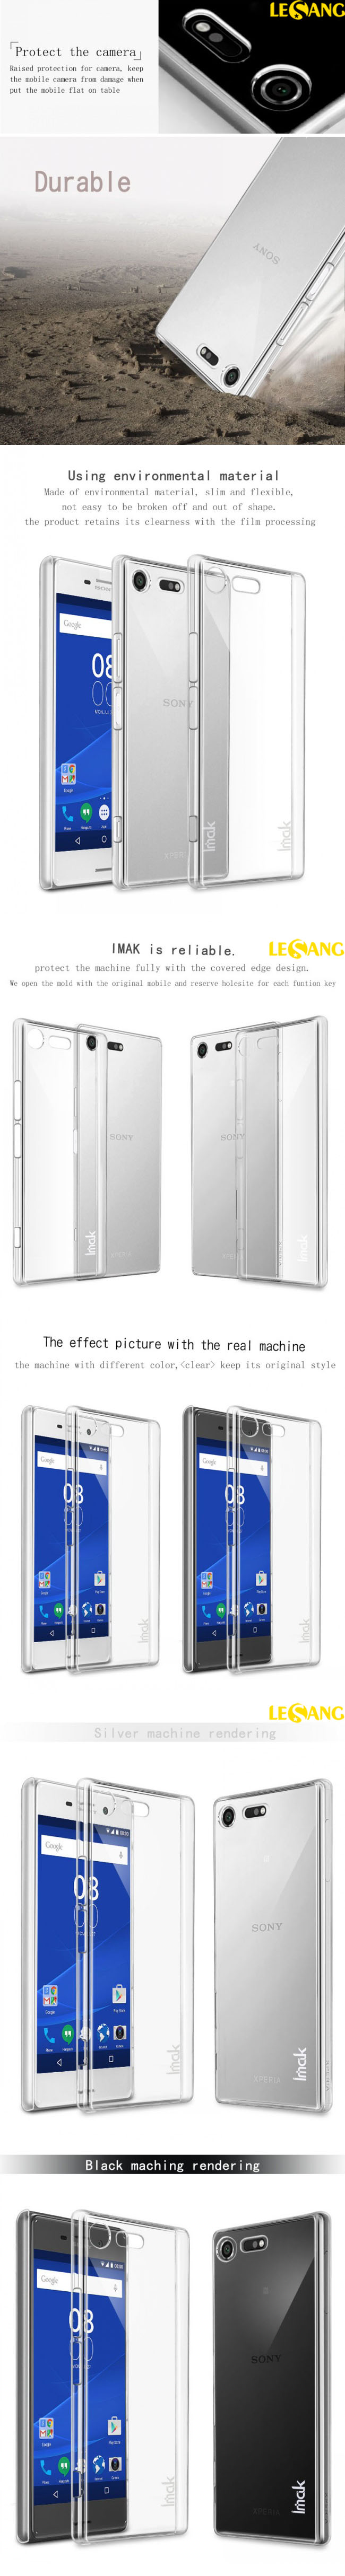 Ốp lưng Sony XZ Premium imak Nano trong suốt - Không ố vàng 32